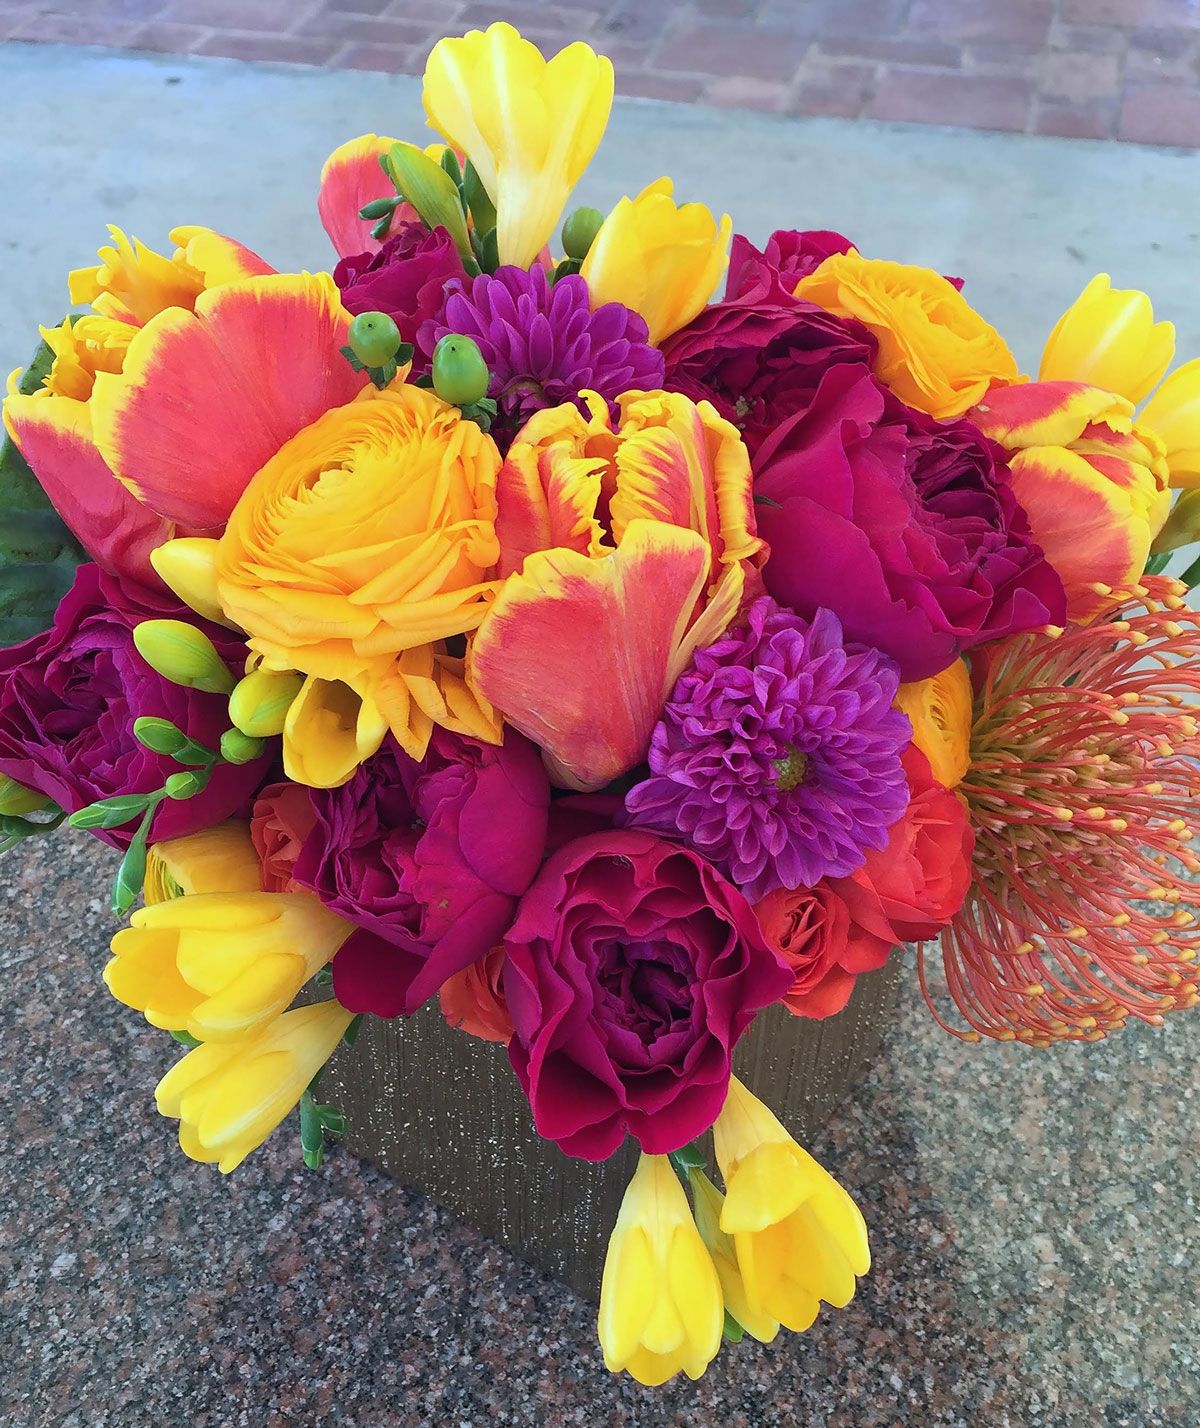 סידור פרחים בצבע בהיר עם צבעוני תוכי